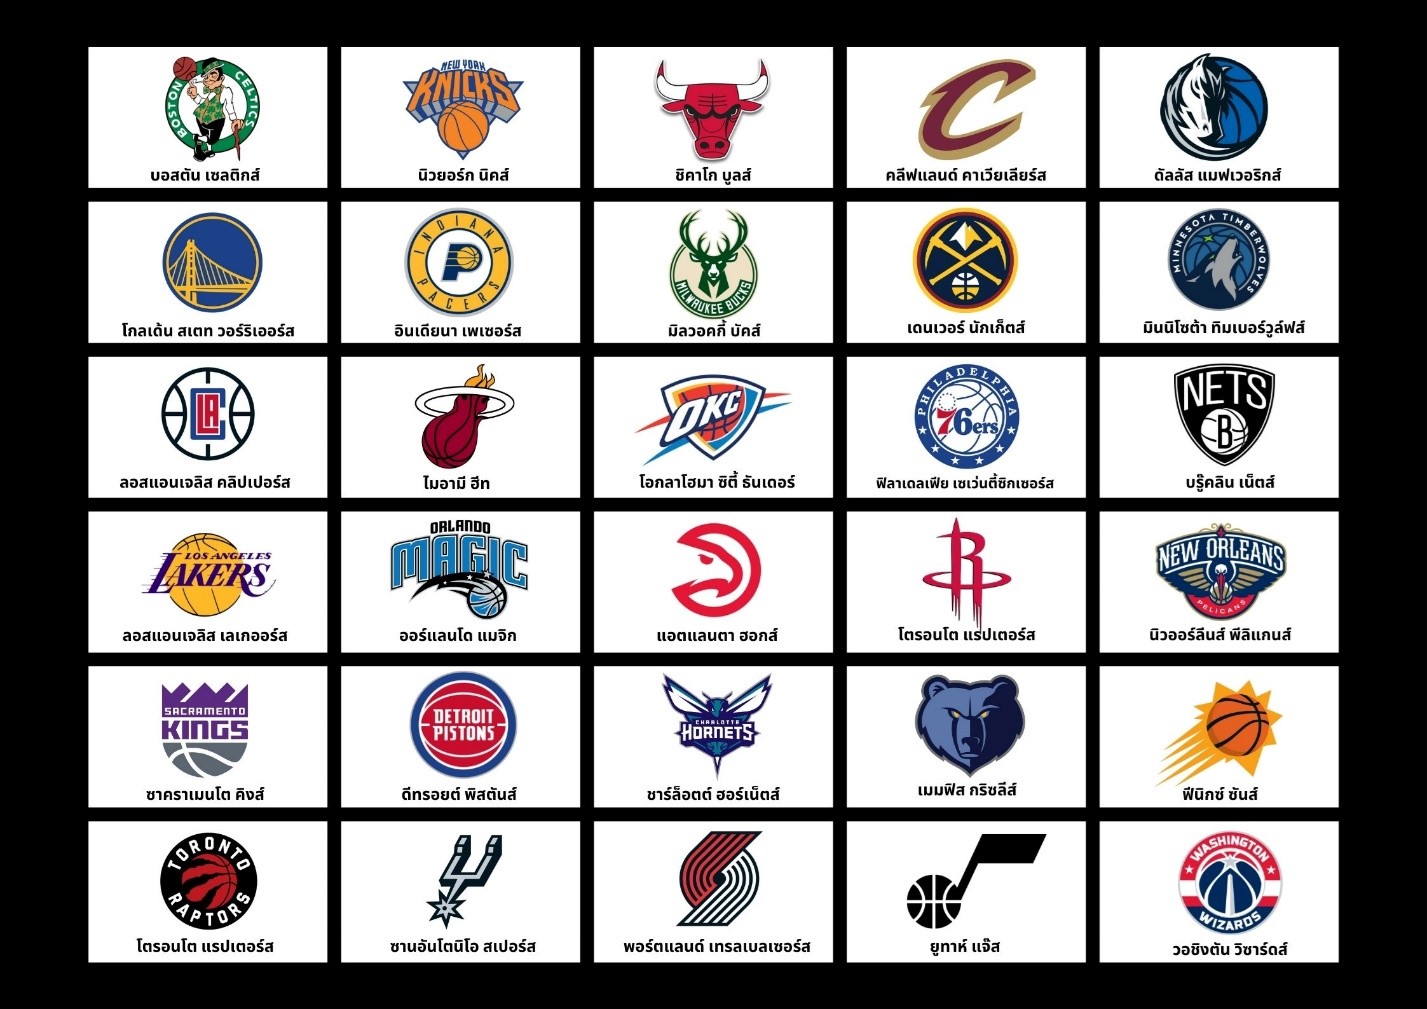 บาส NBA - เจาะลึกทีมต่างๆ มีทีมอะไรบ้าง การแบ่งโซนต่างๆ